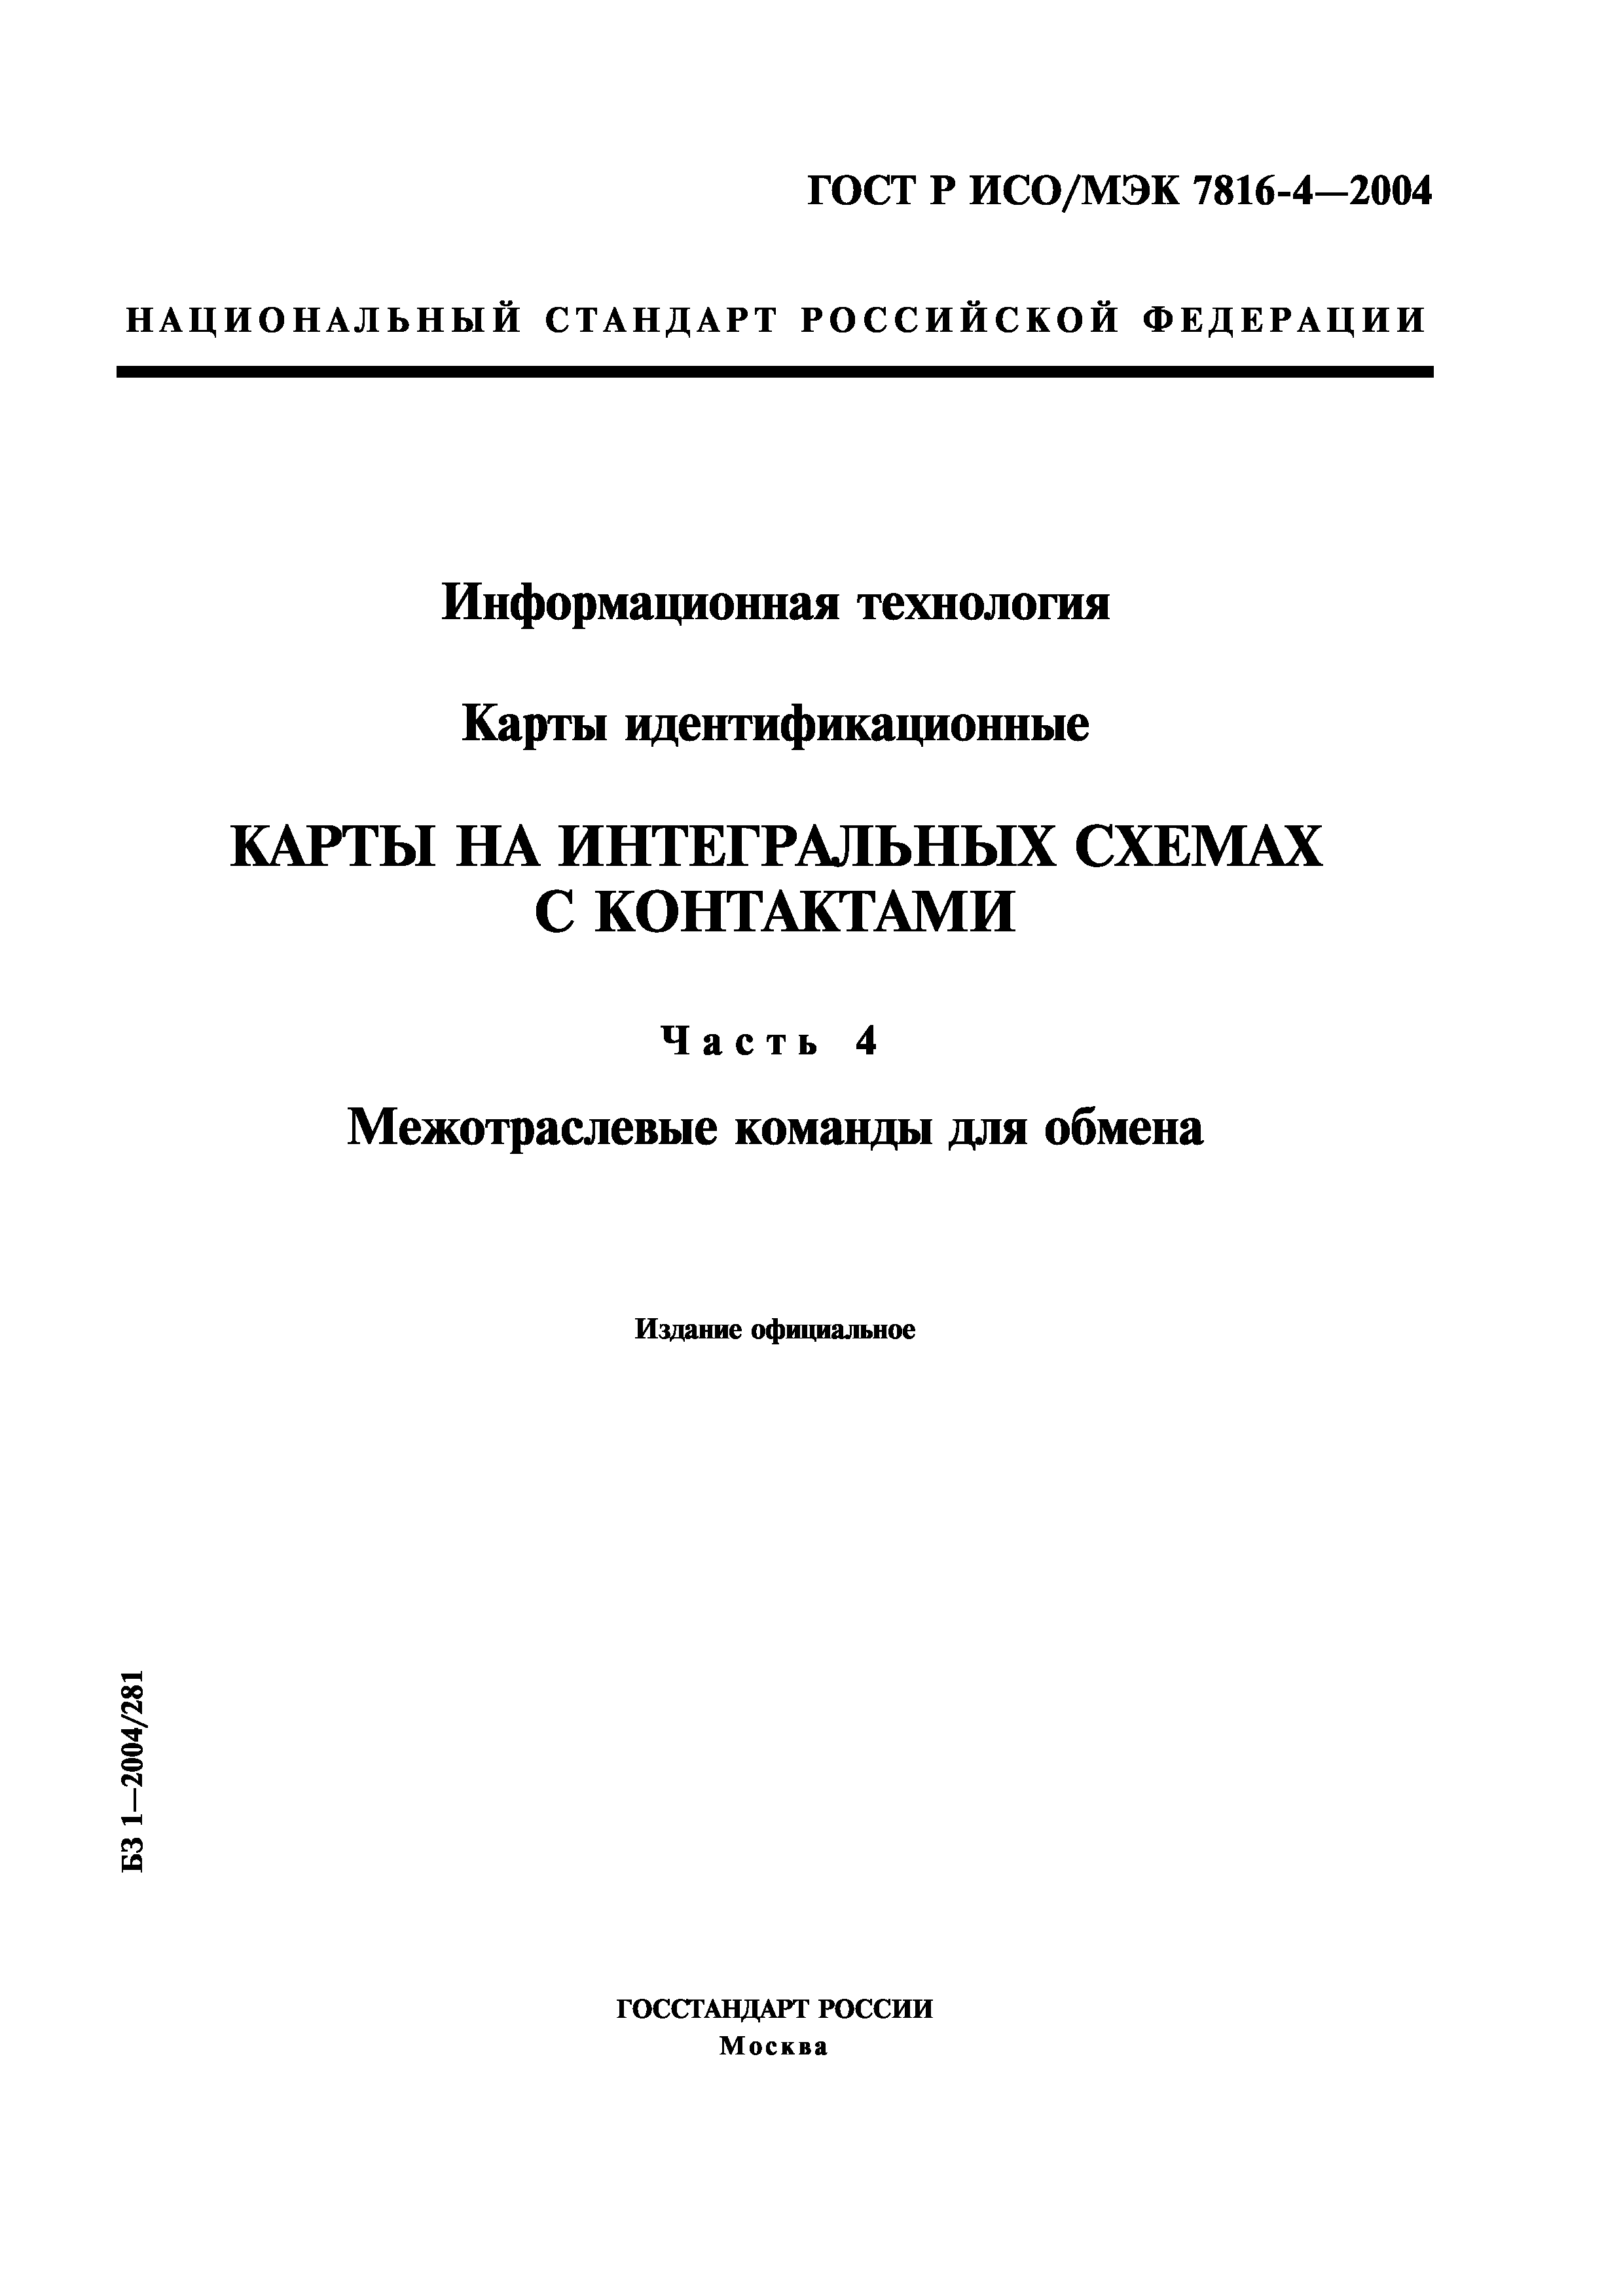 ГОСТ Р ИСО/МЭК 7816-4-2004